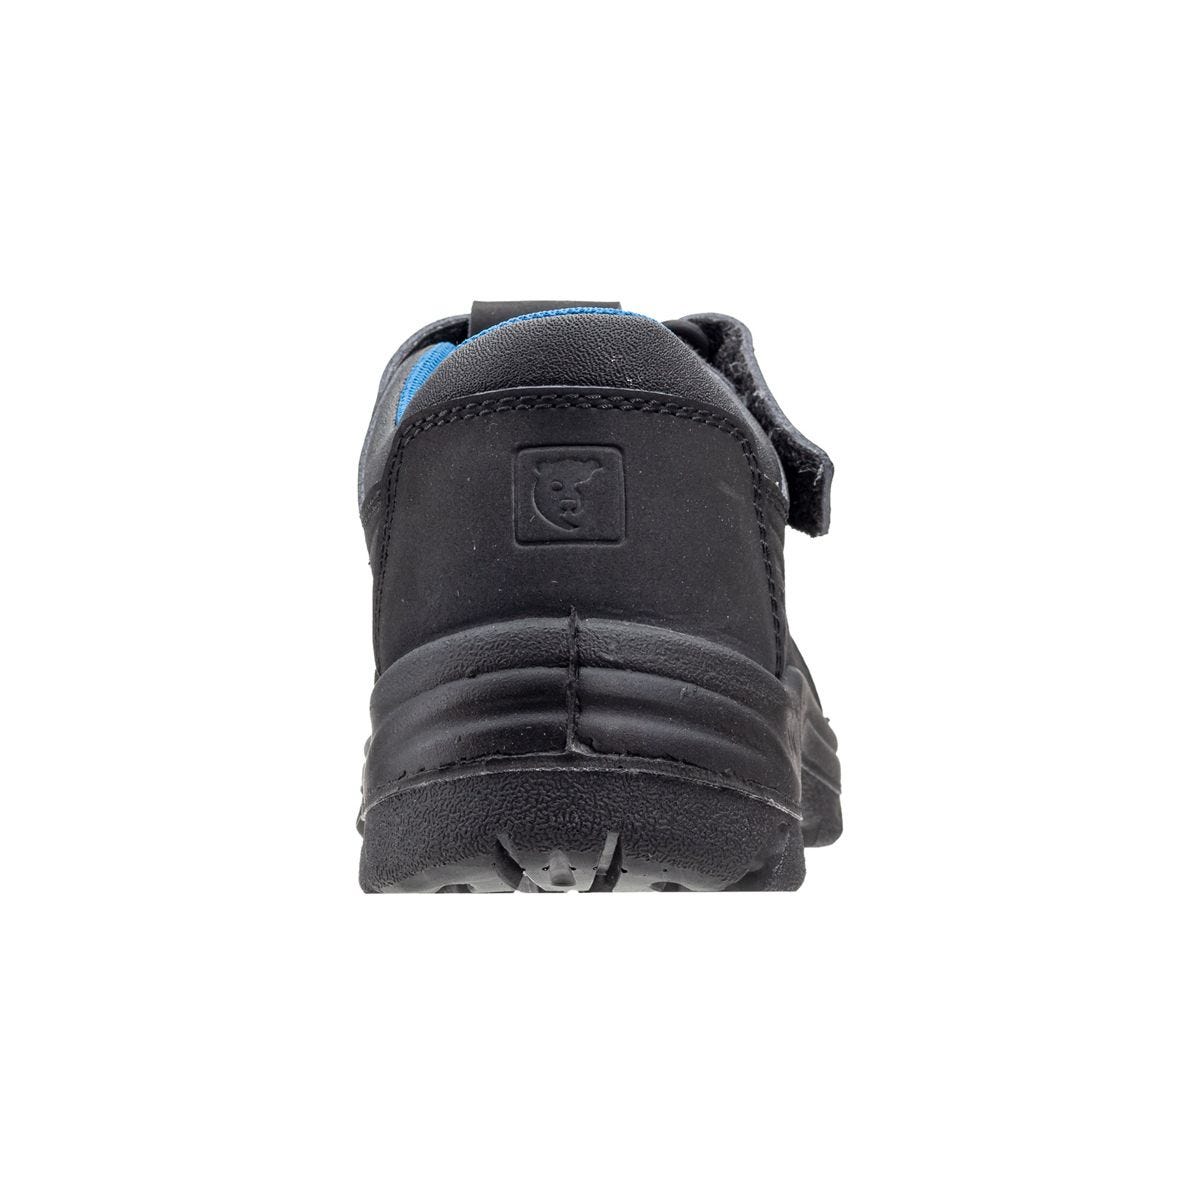 Sandales de sécurité basses Bono II Noir - Coverguard - Taille 40 2